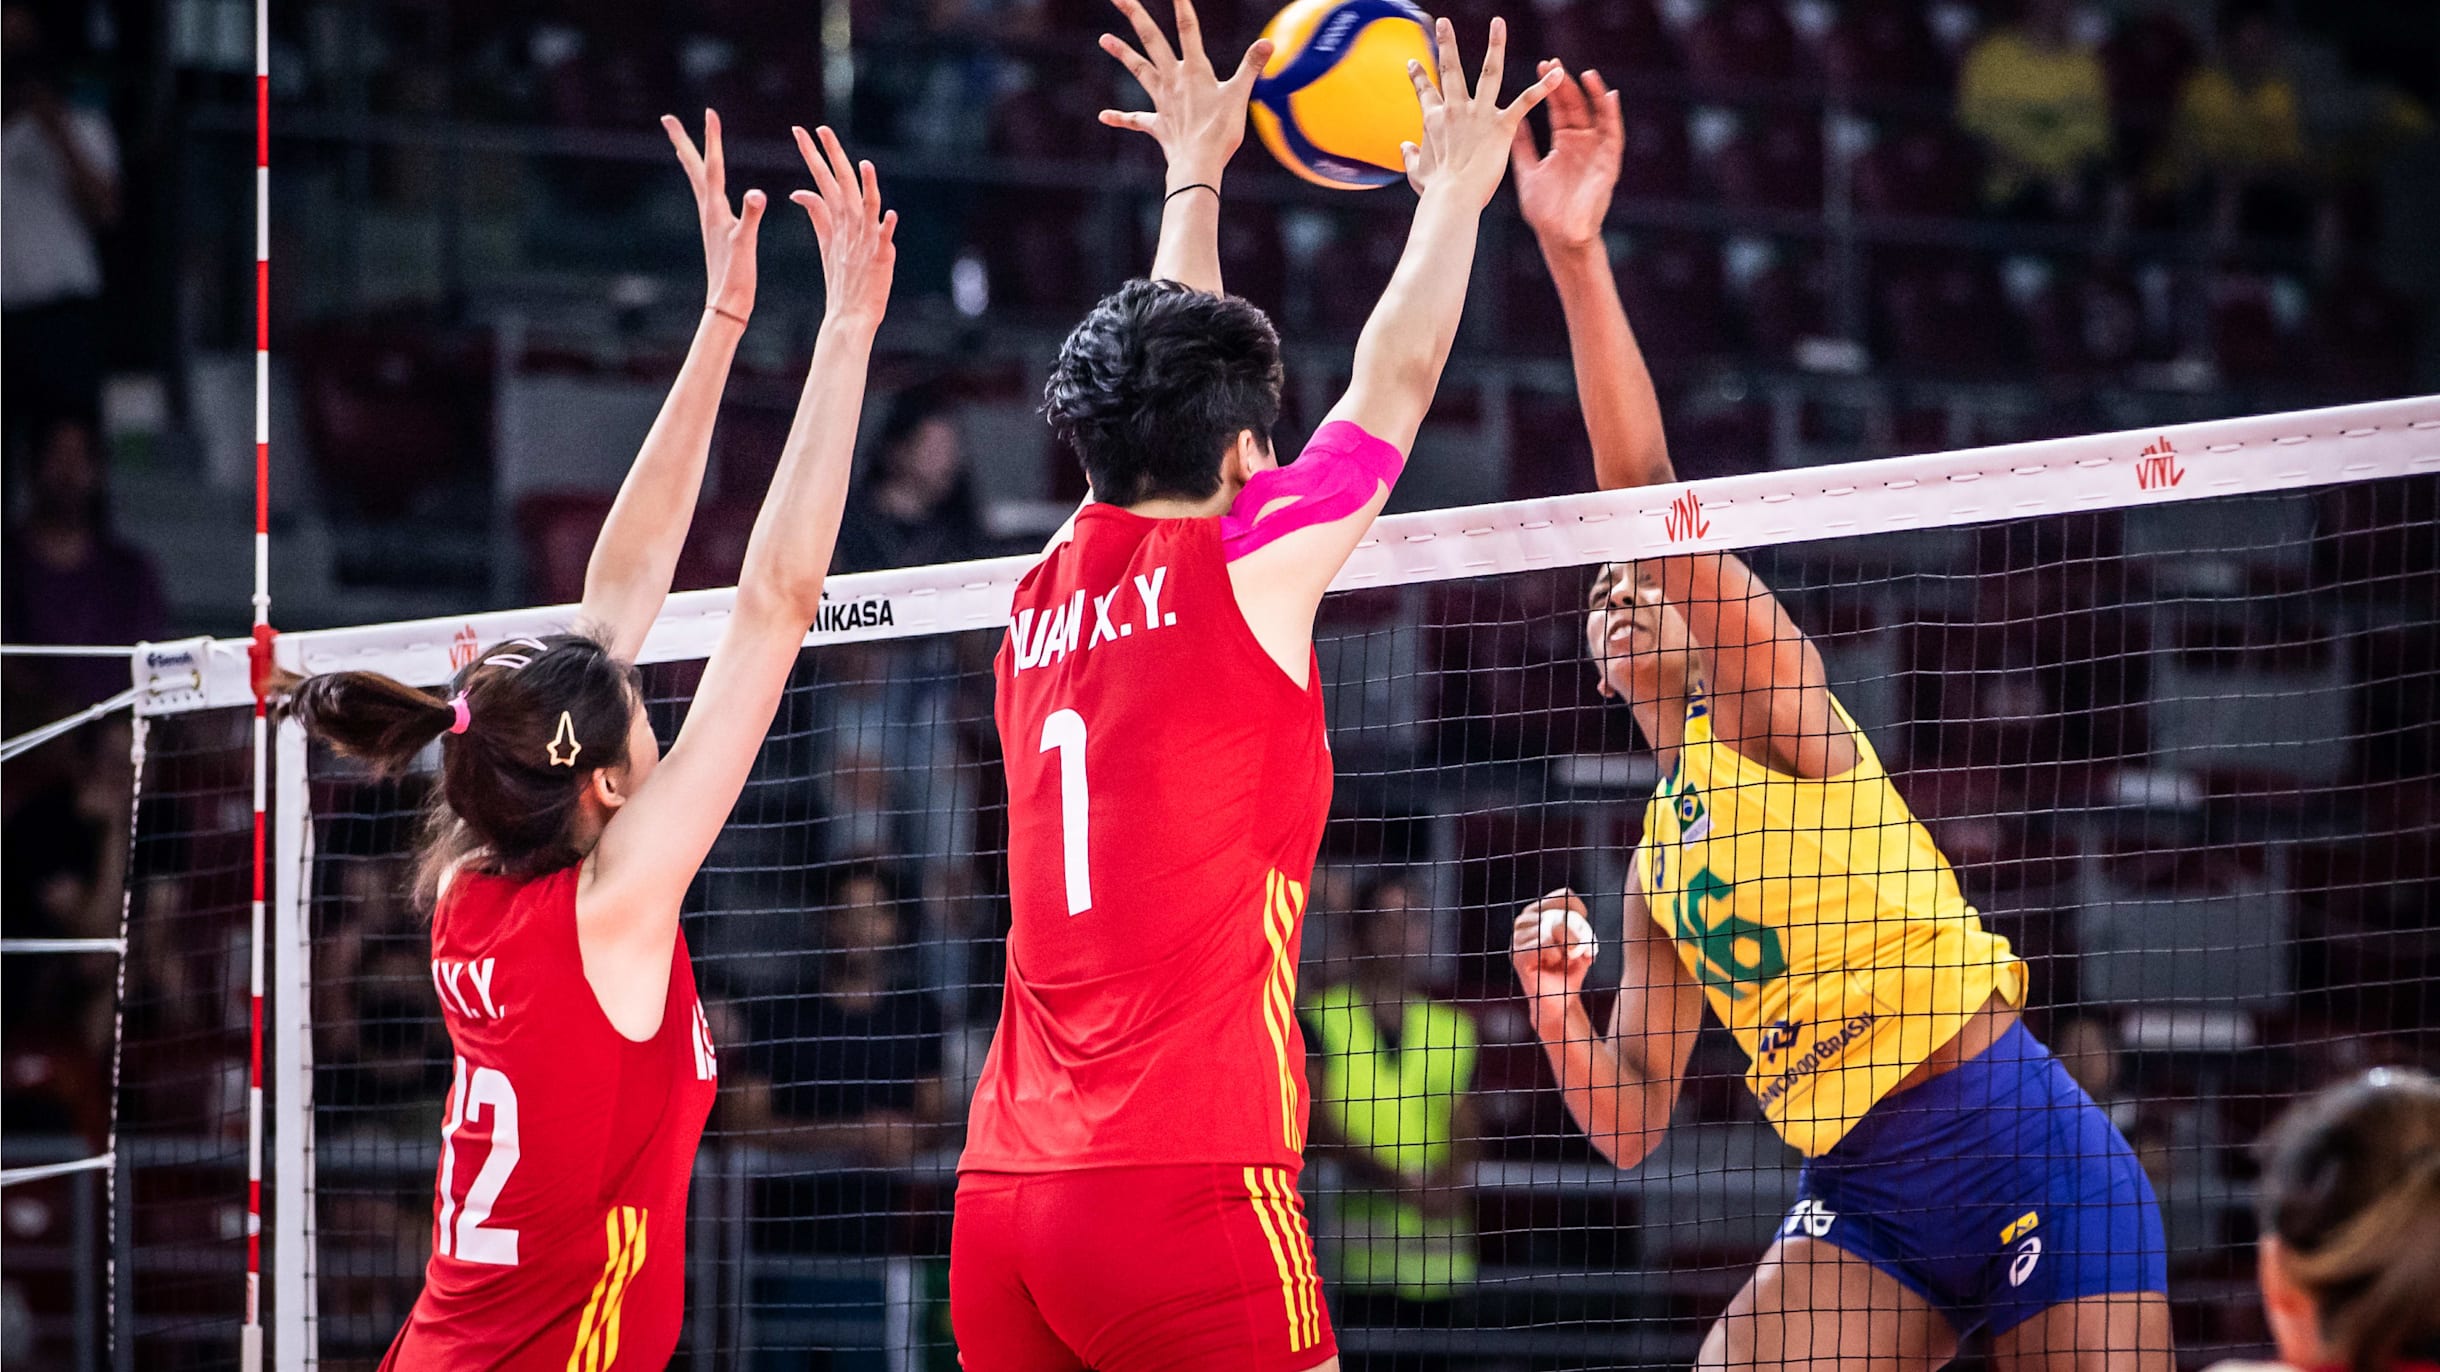 Vôlei: China vence Brasil em estreia com virada no tie-break